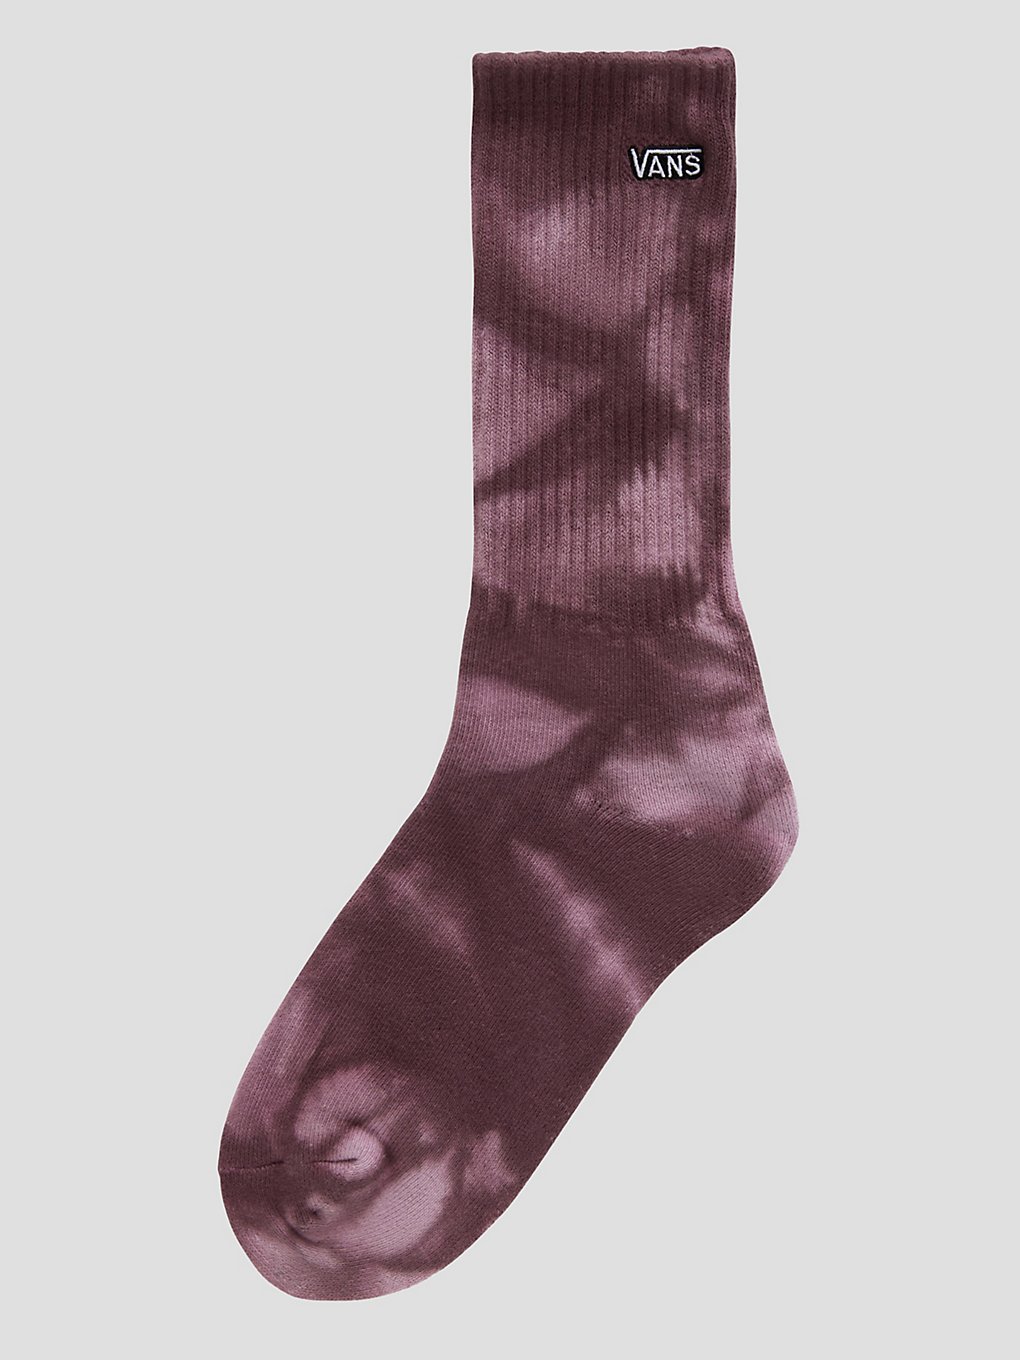 Vans Tie Dye (6.5-10) Socken fudge kaufen